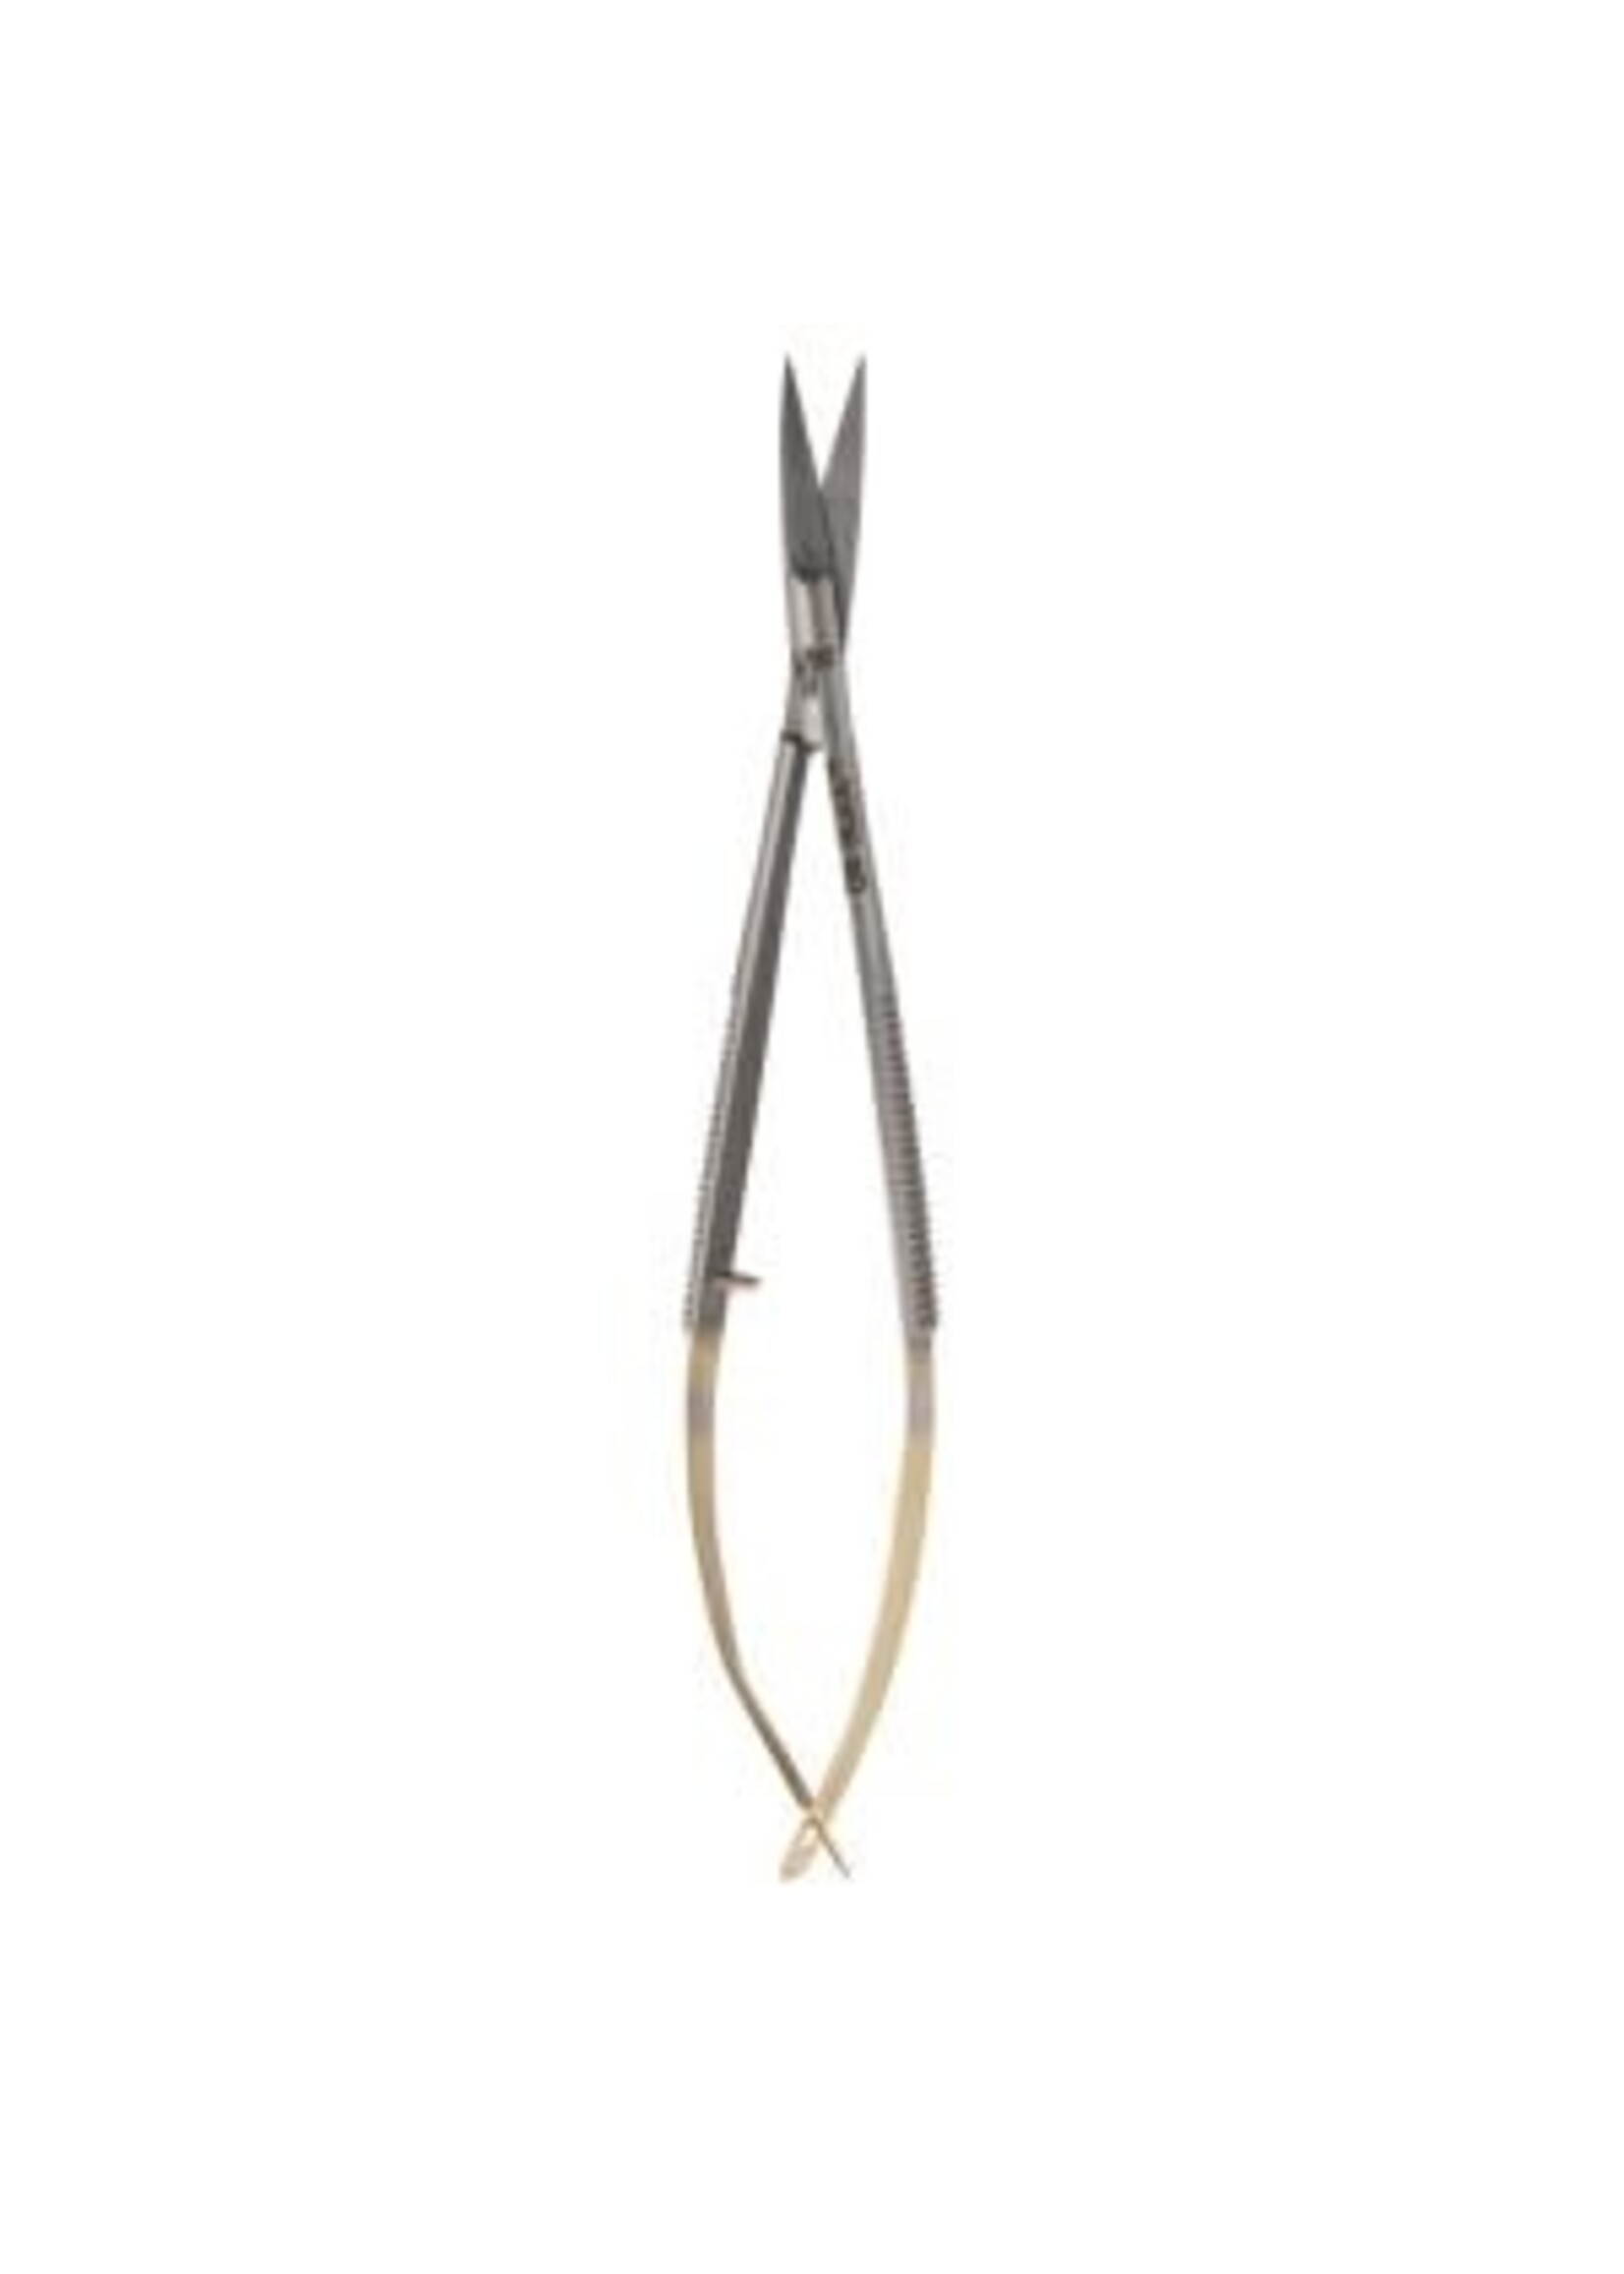 Dr. Slick Dr. Slick Spring Scissor, 4", Gold Handles, Straight